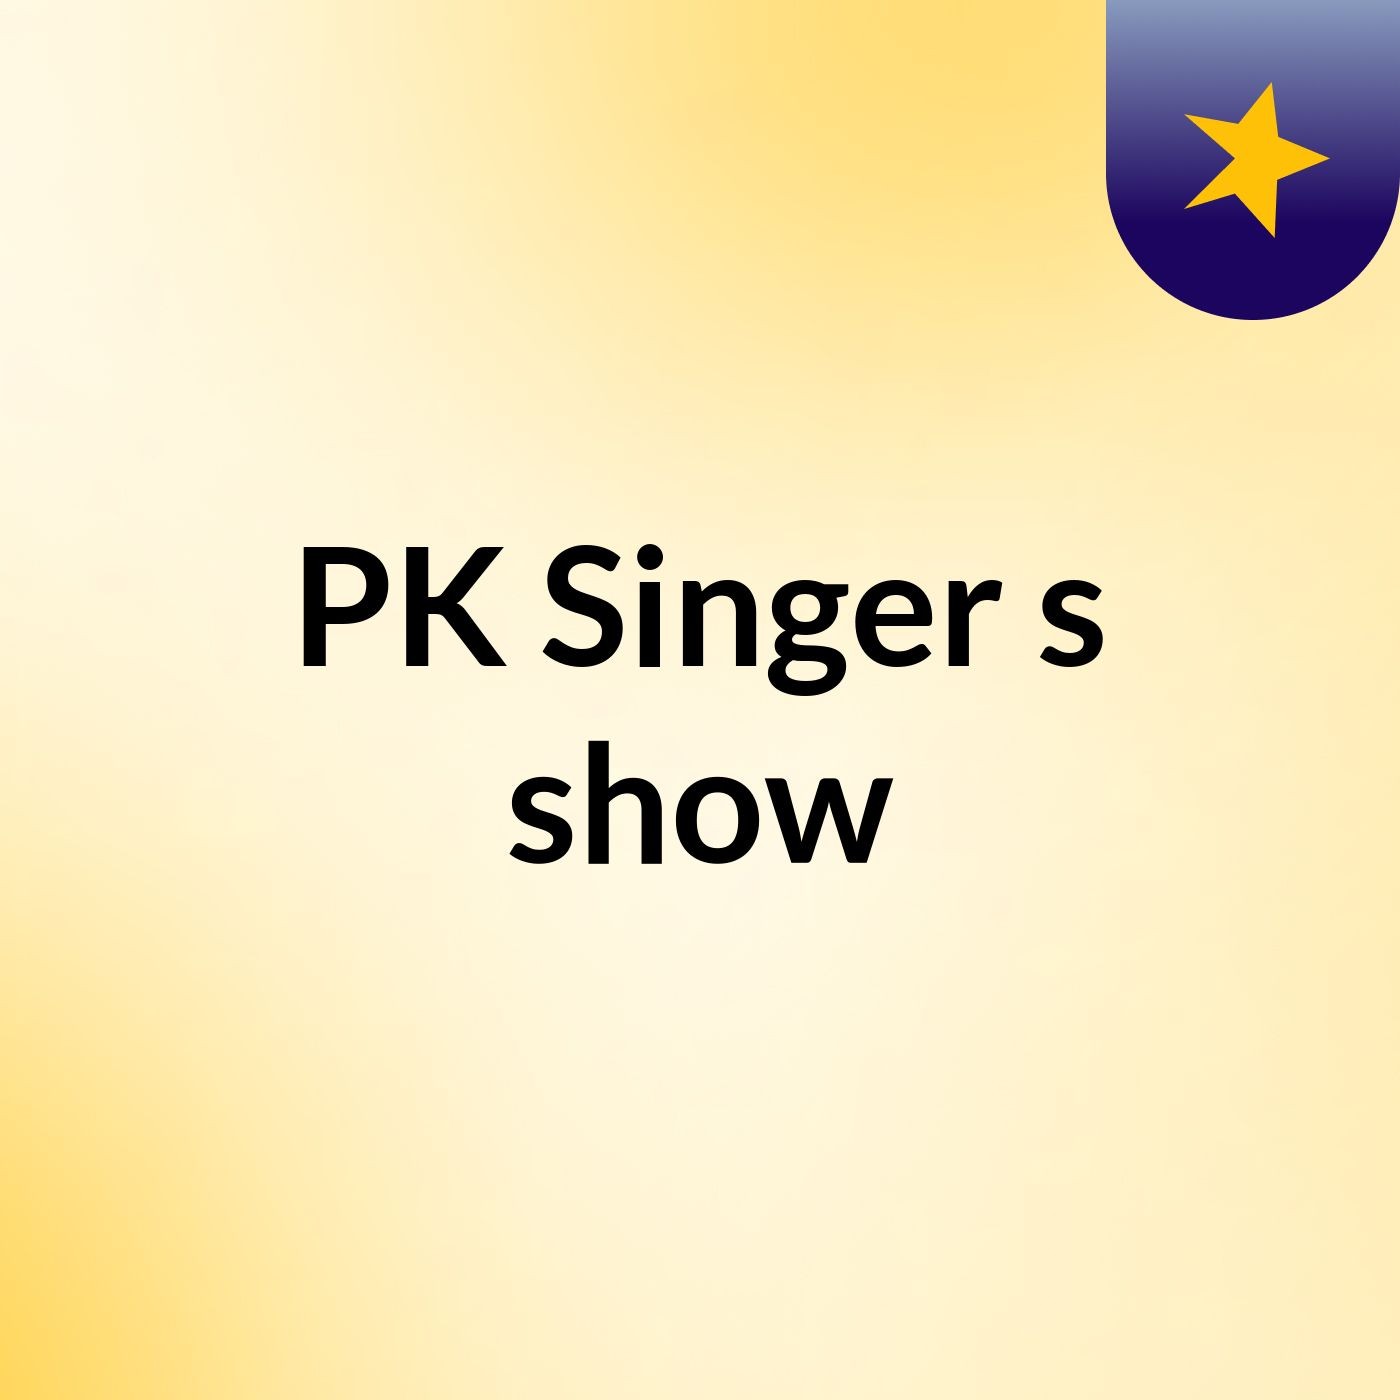 PK Singer's show